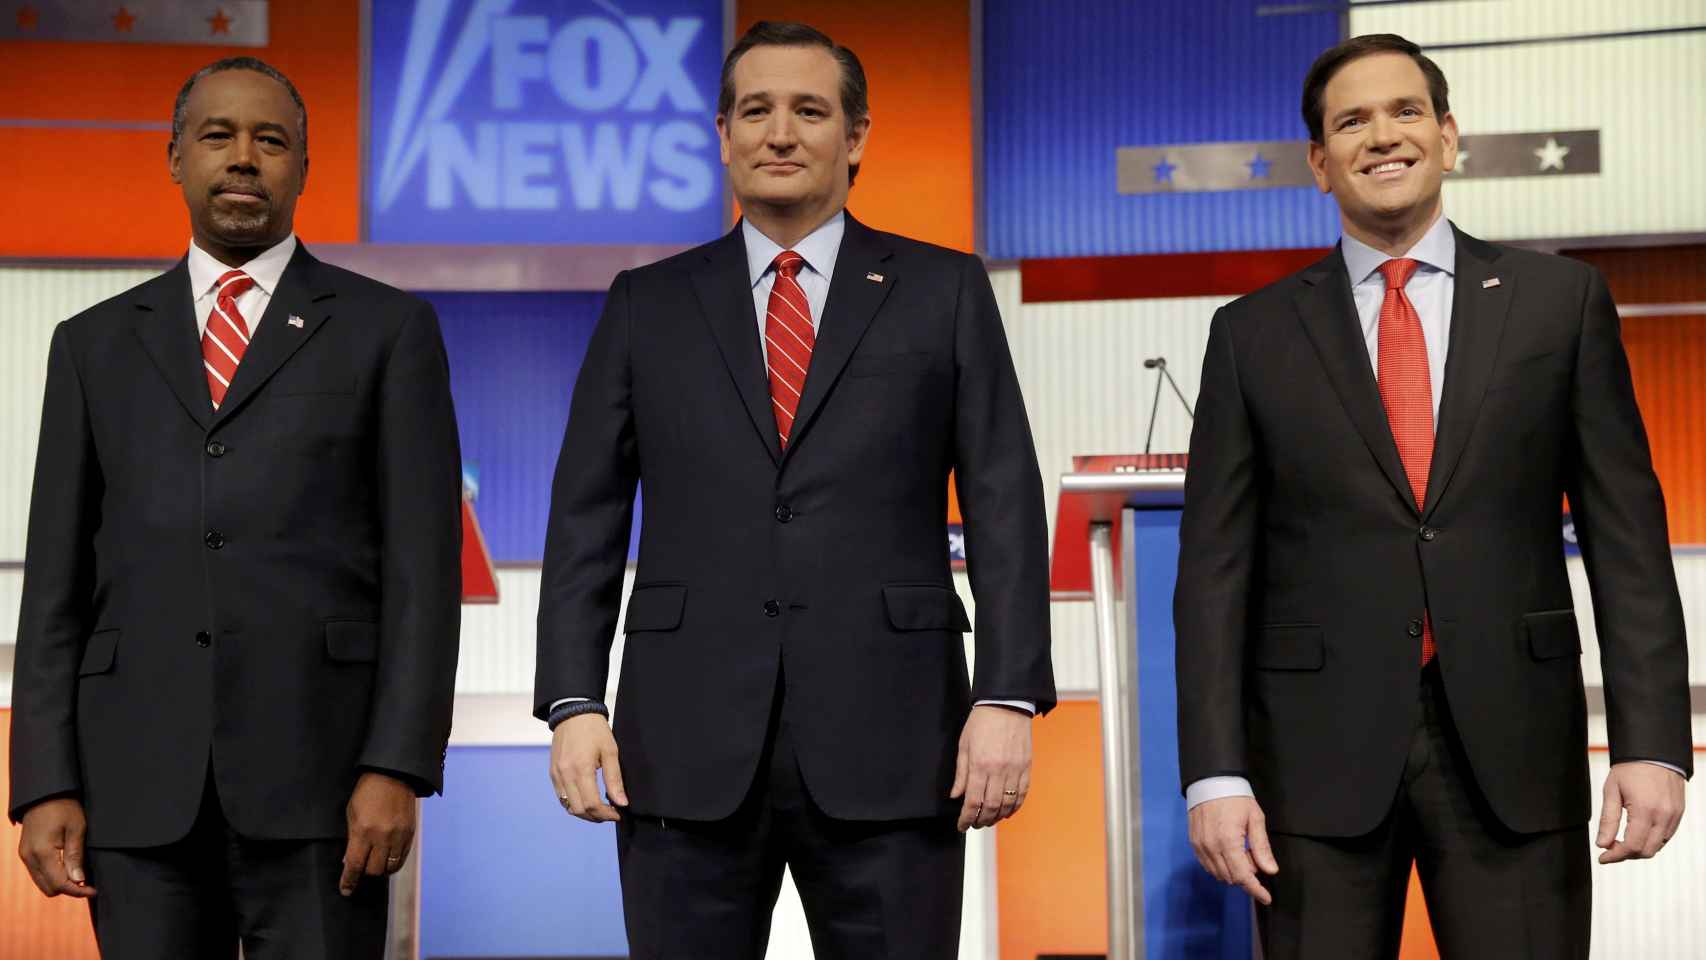 Los candidatos republicanos Carson, Cruz y Rubio, posan antes del debate.